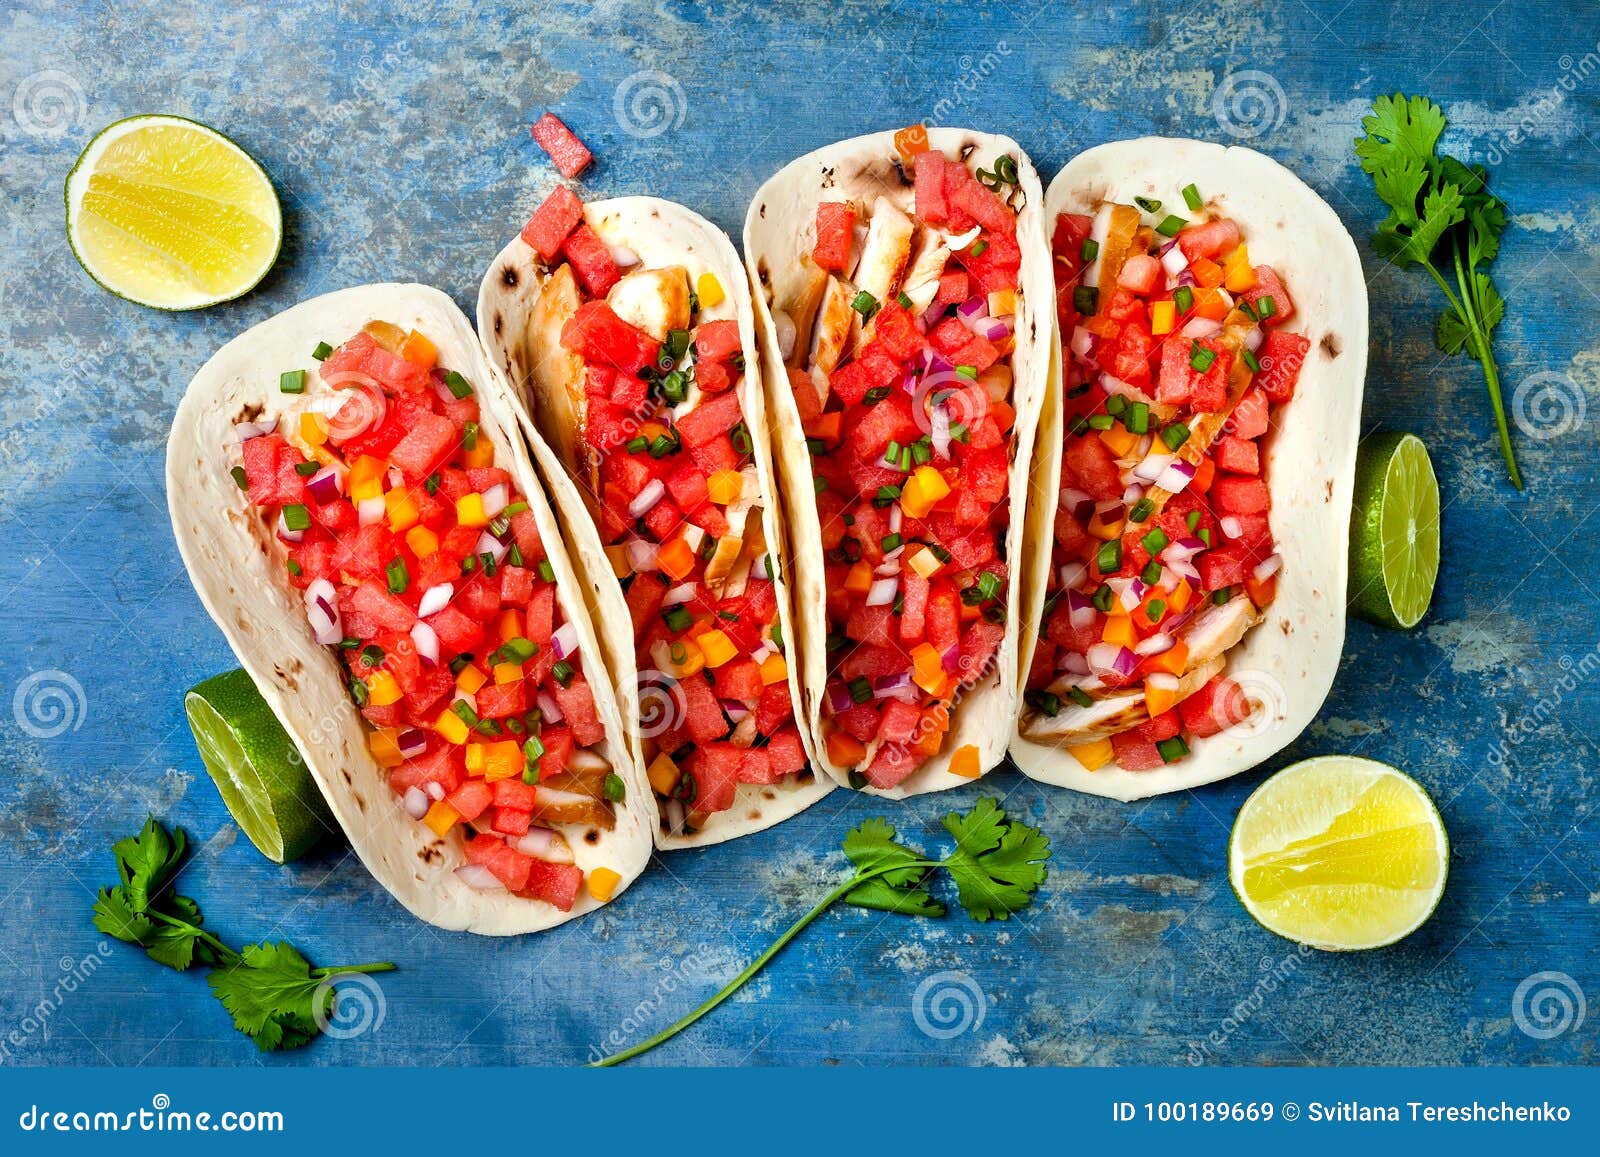 Tacos De Pollo Asados a La Parrilla Mexicano Con Salsa De La Sandía Imagen  de archivo - Imagen de endecha, fondo: 100189669